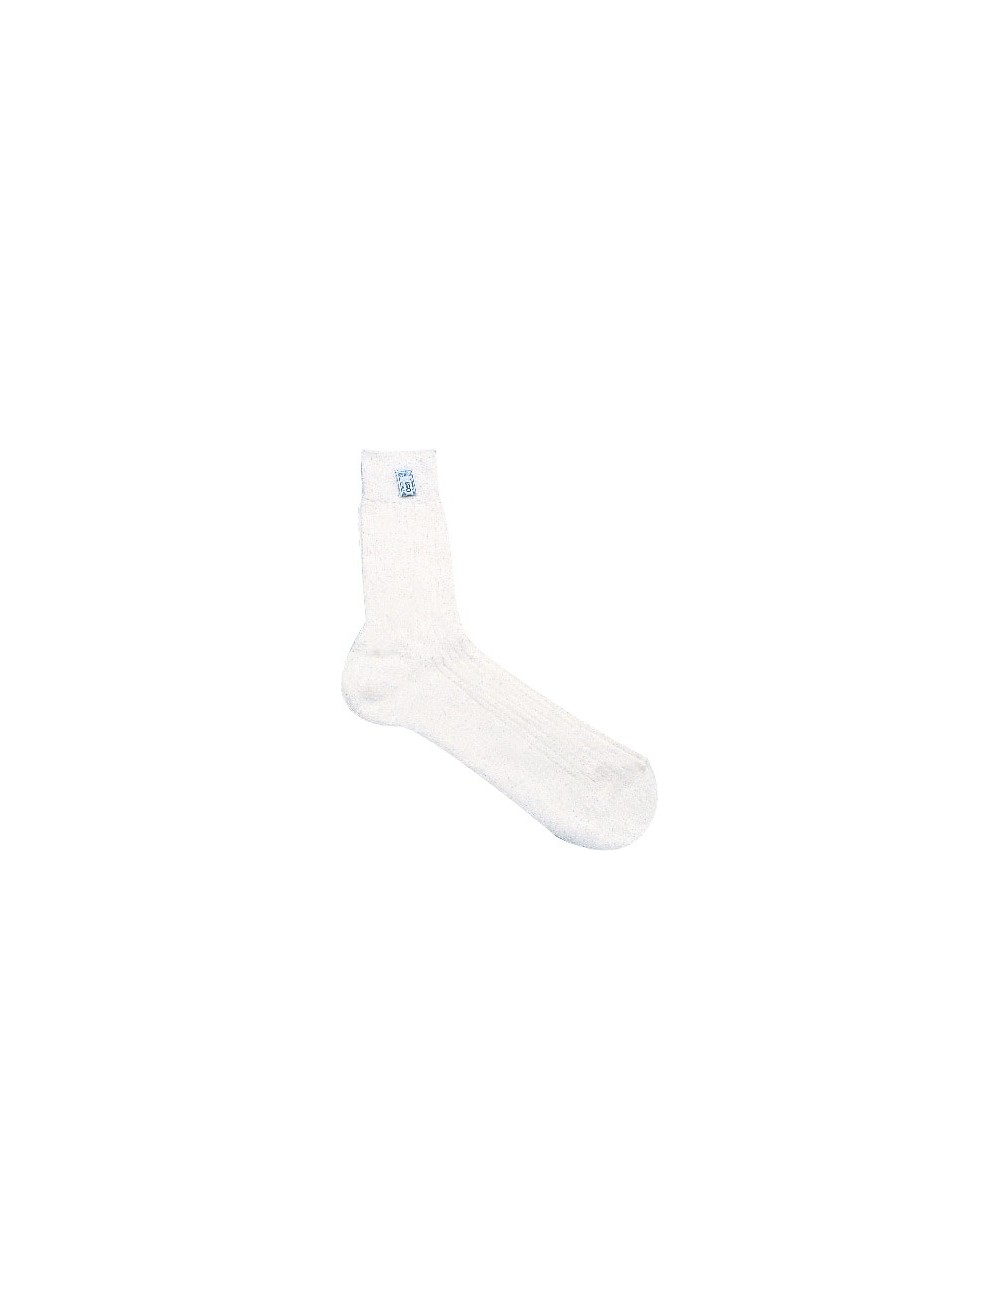 Nomex SPARCO chaussettes moyen Soft Touch | FIA blanc